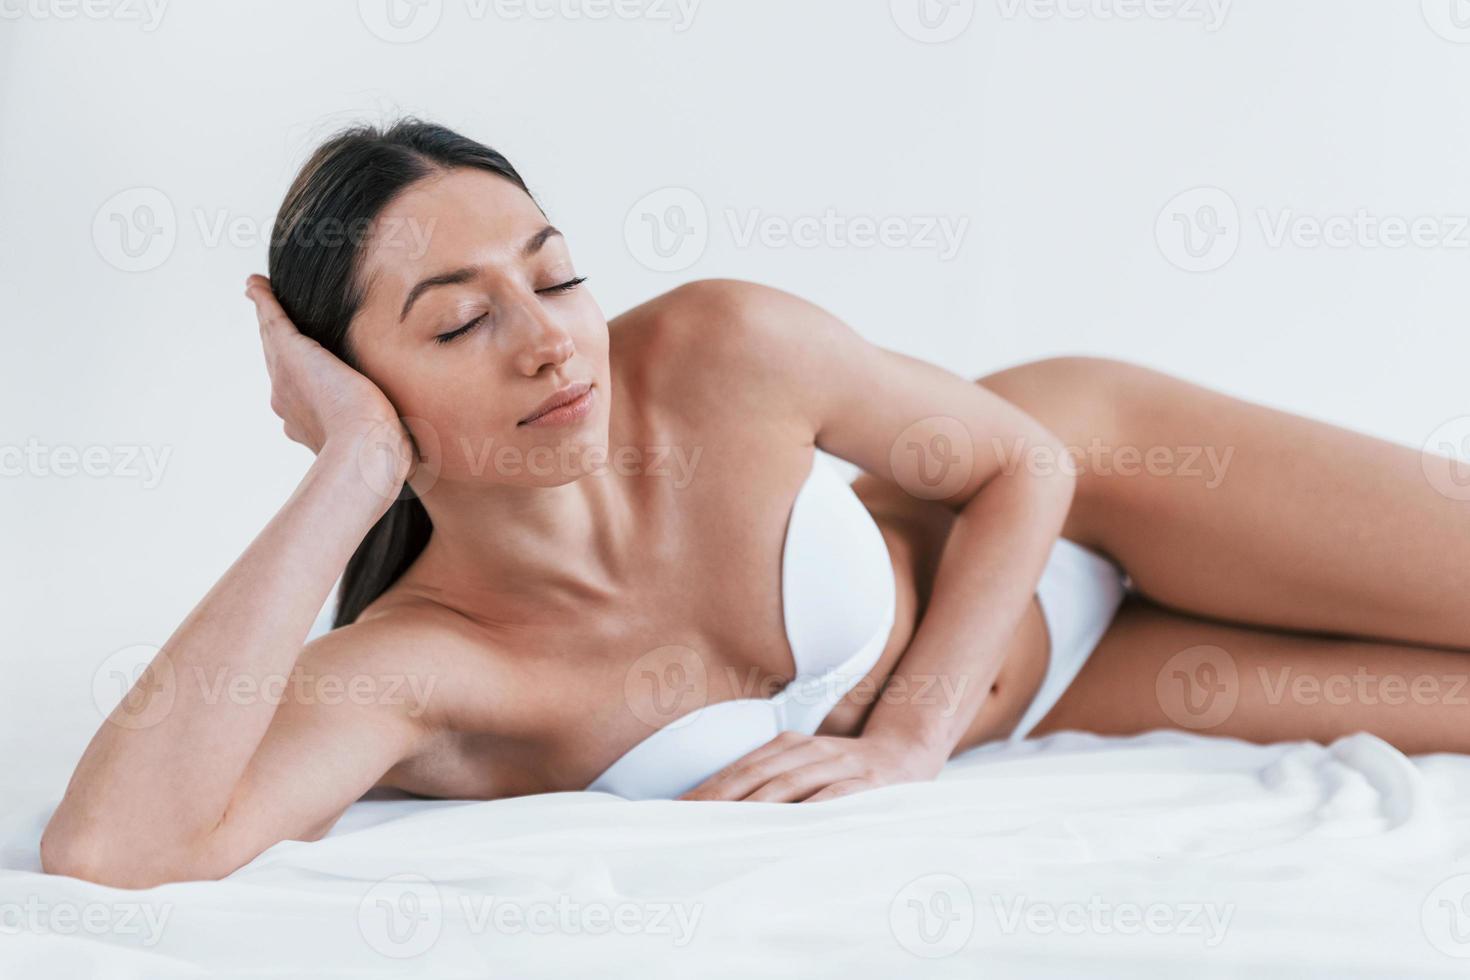 jeune femme en sous-vêtements et avec une belle forme de corps allongée dans le studio sur fond blanc photo